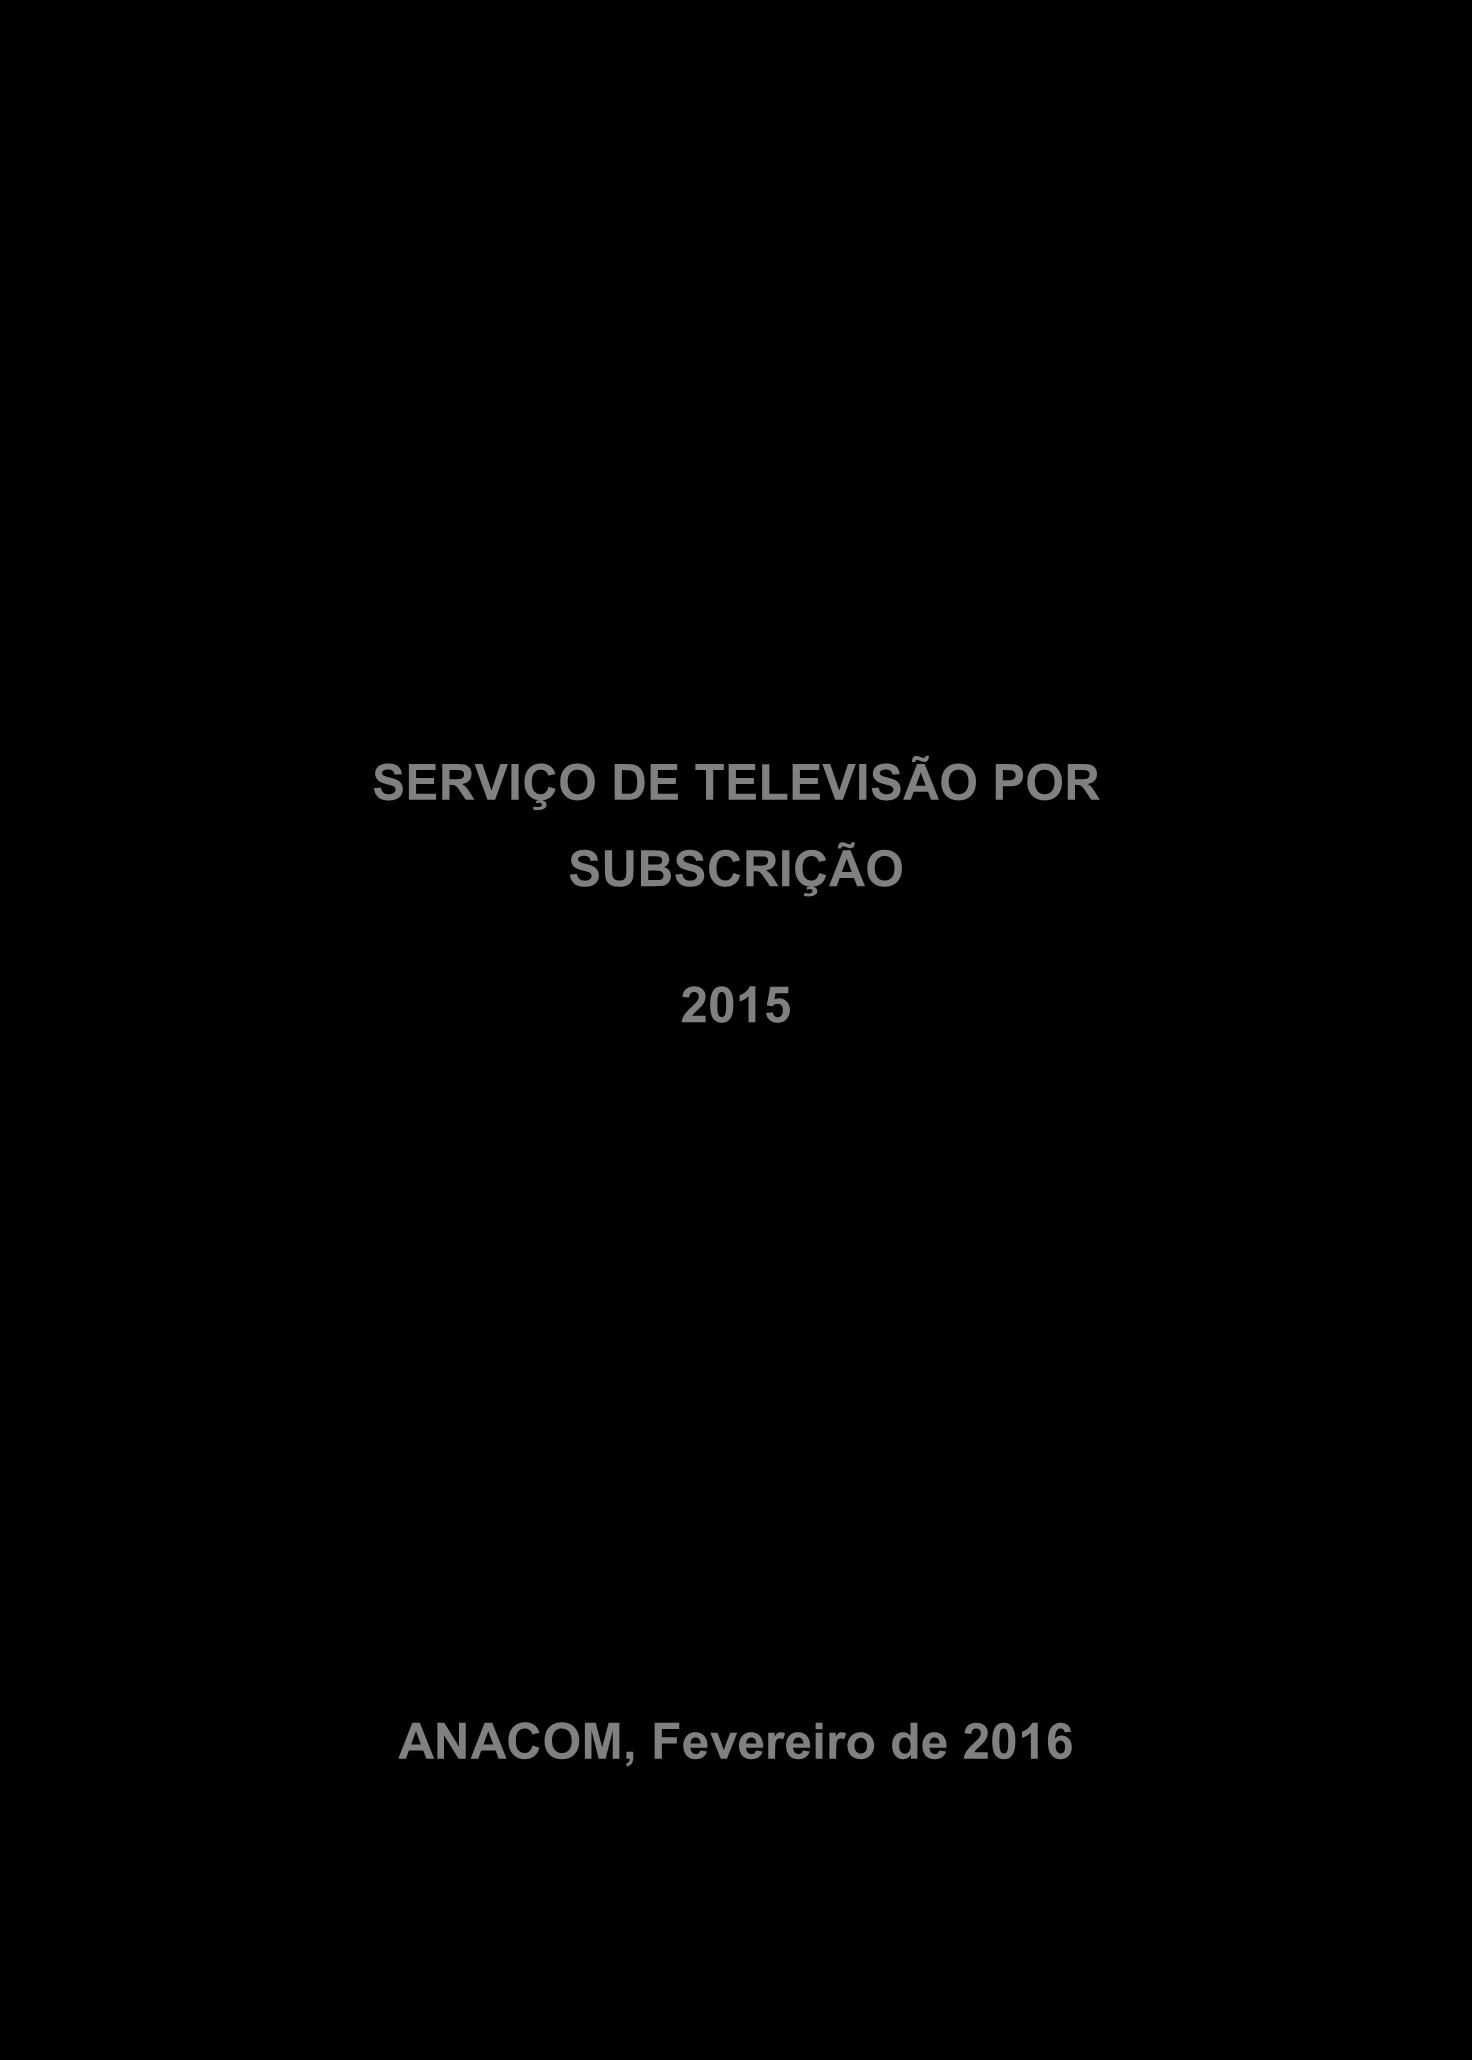 SERVIÇO DE TELEVISÃO POR SUBSCRIÇÃO 2015